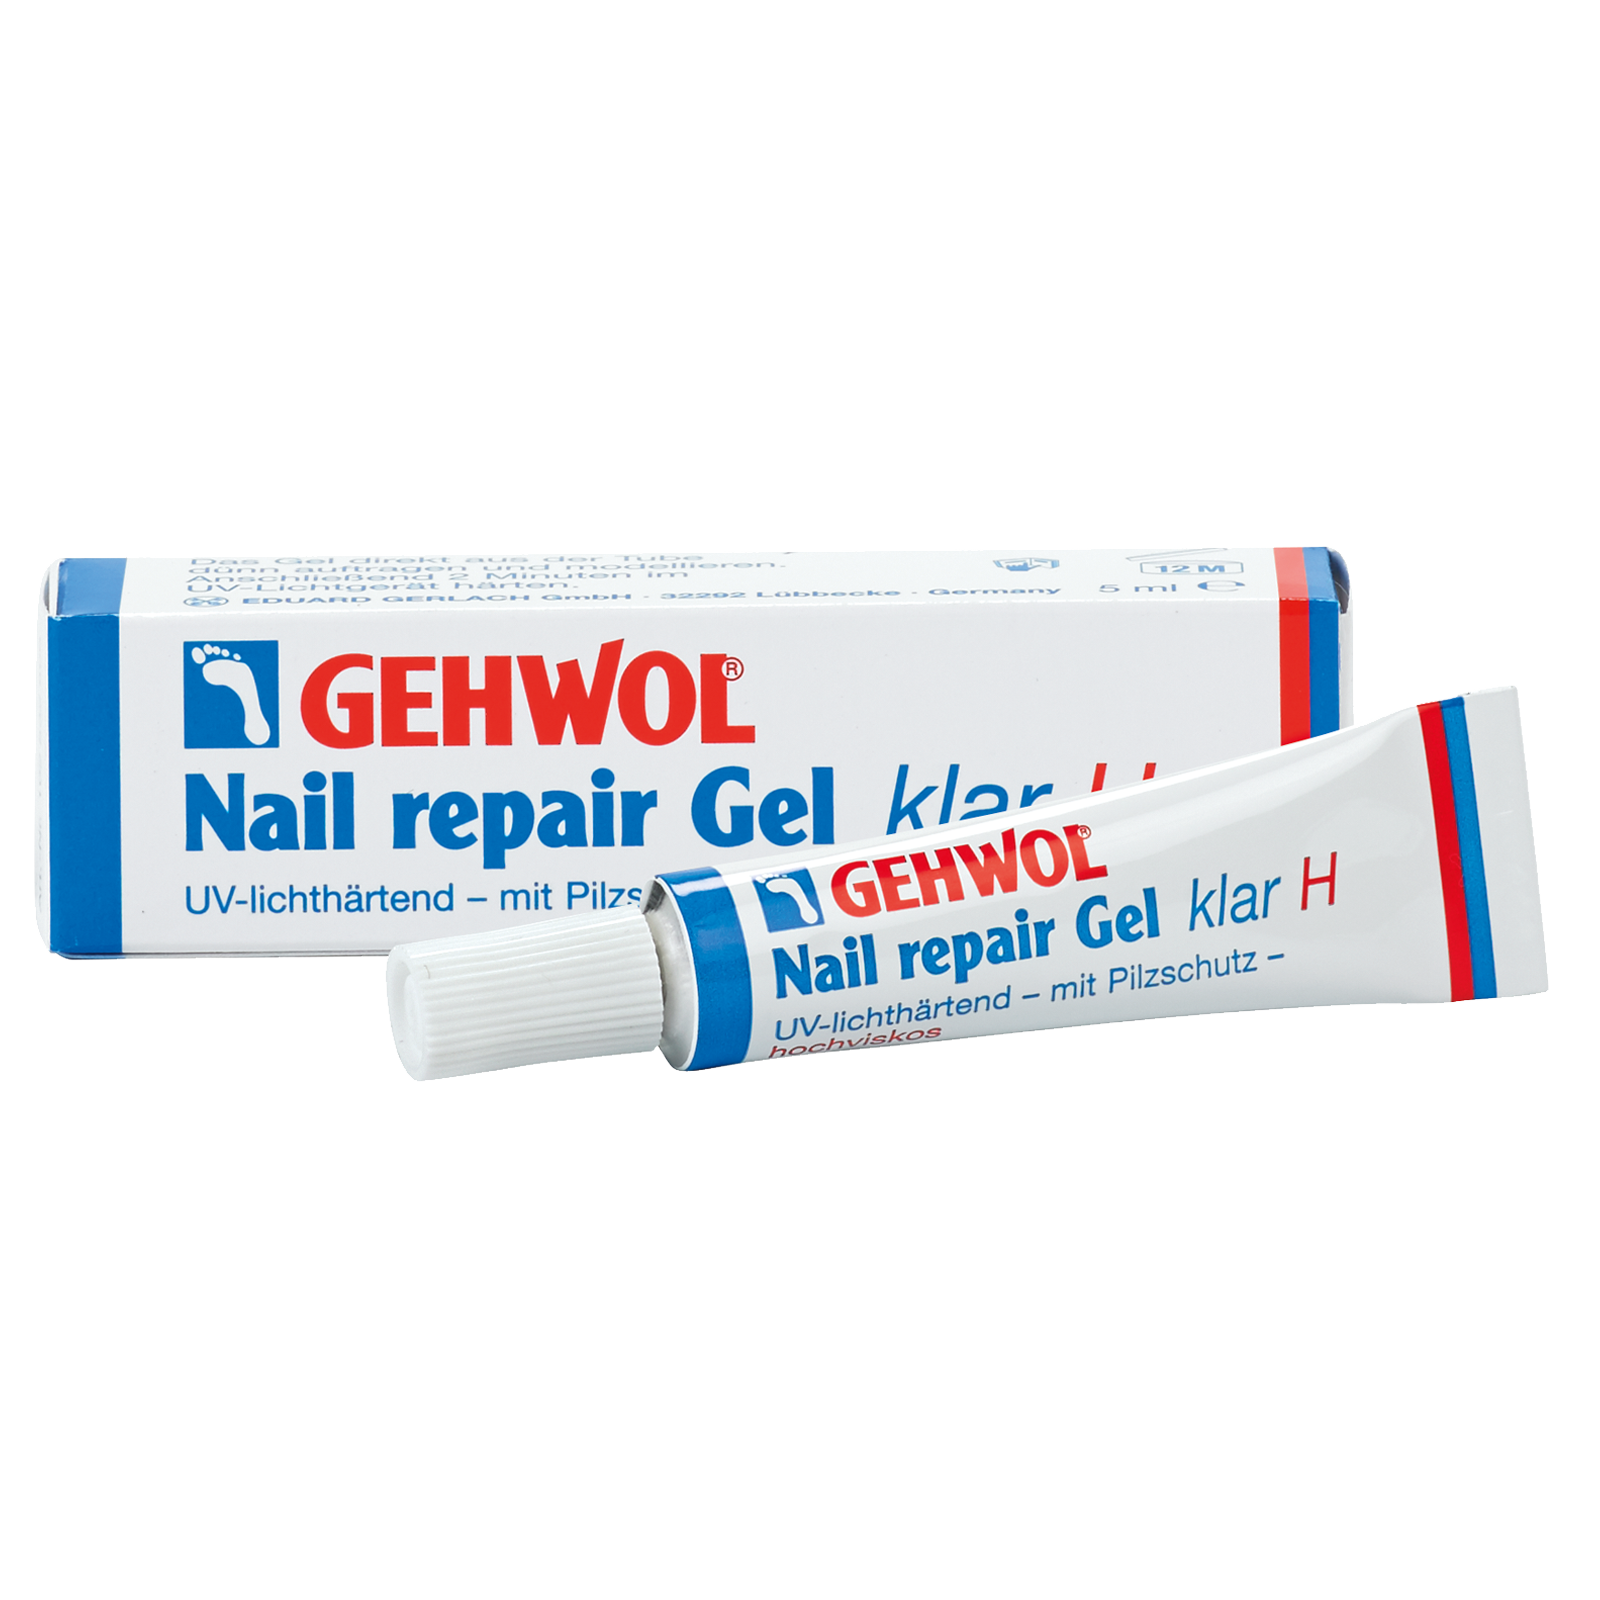 nail repair gel